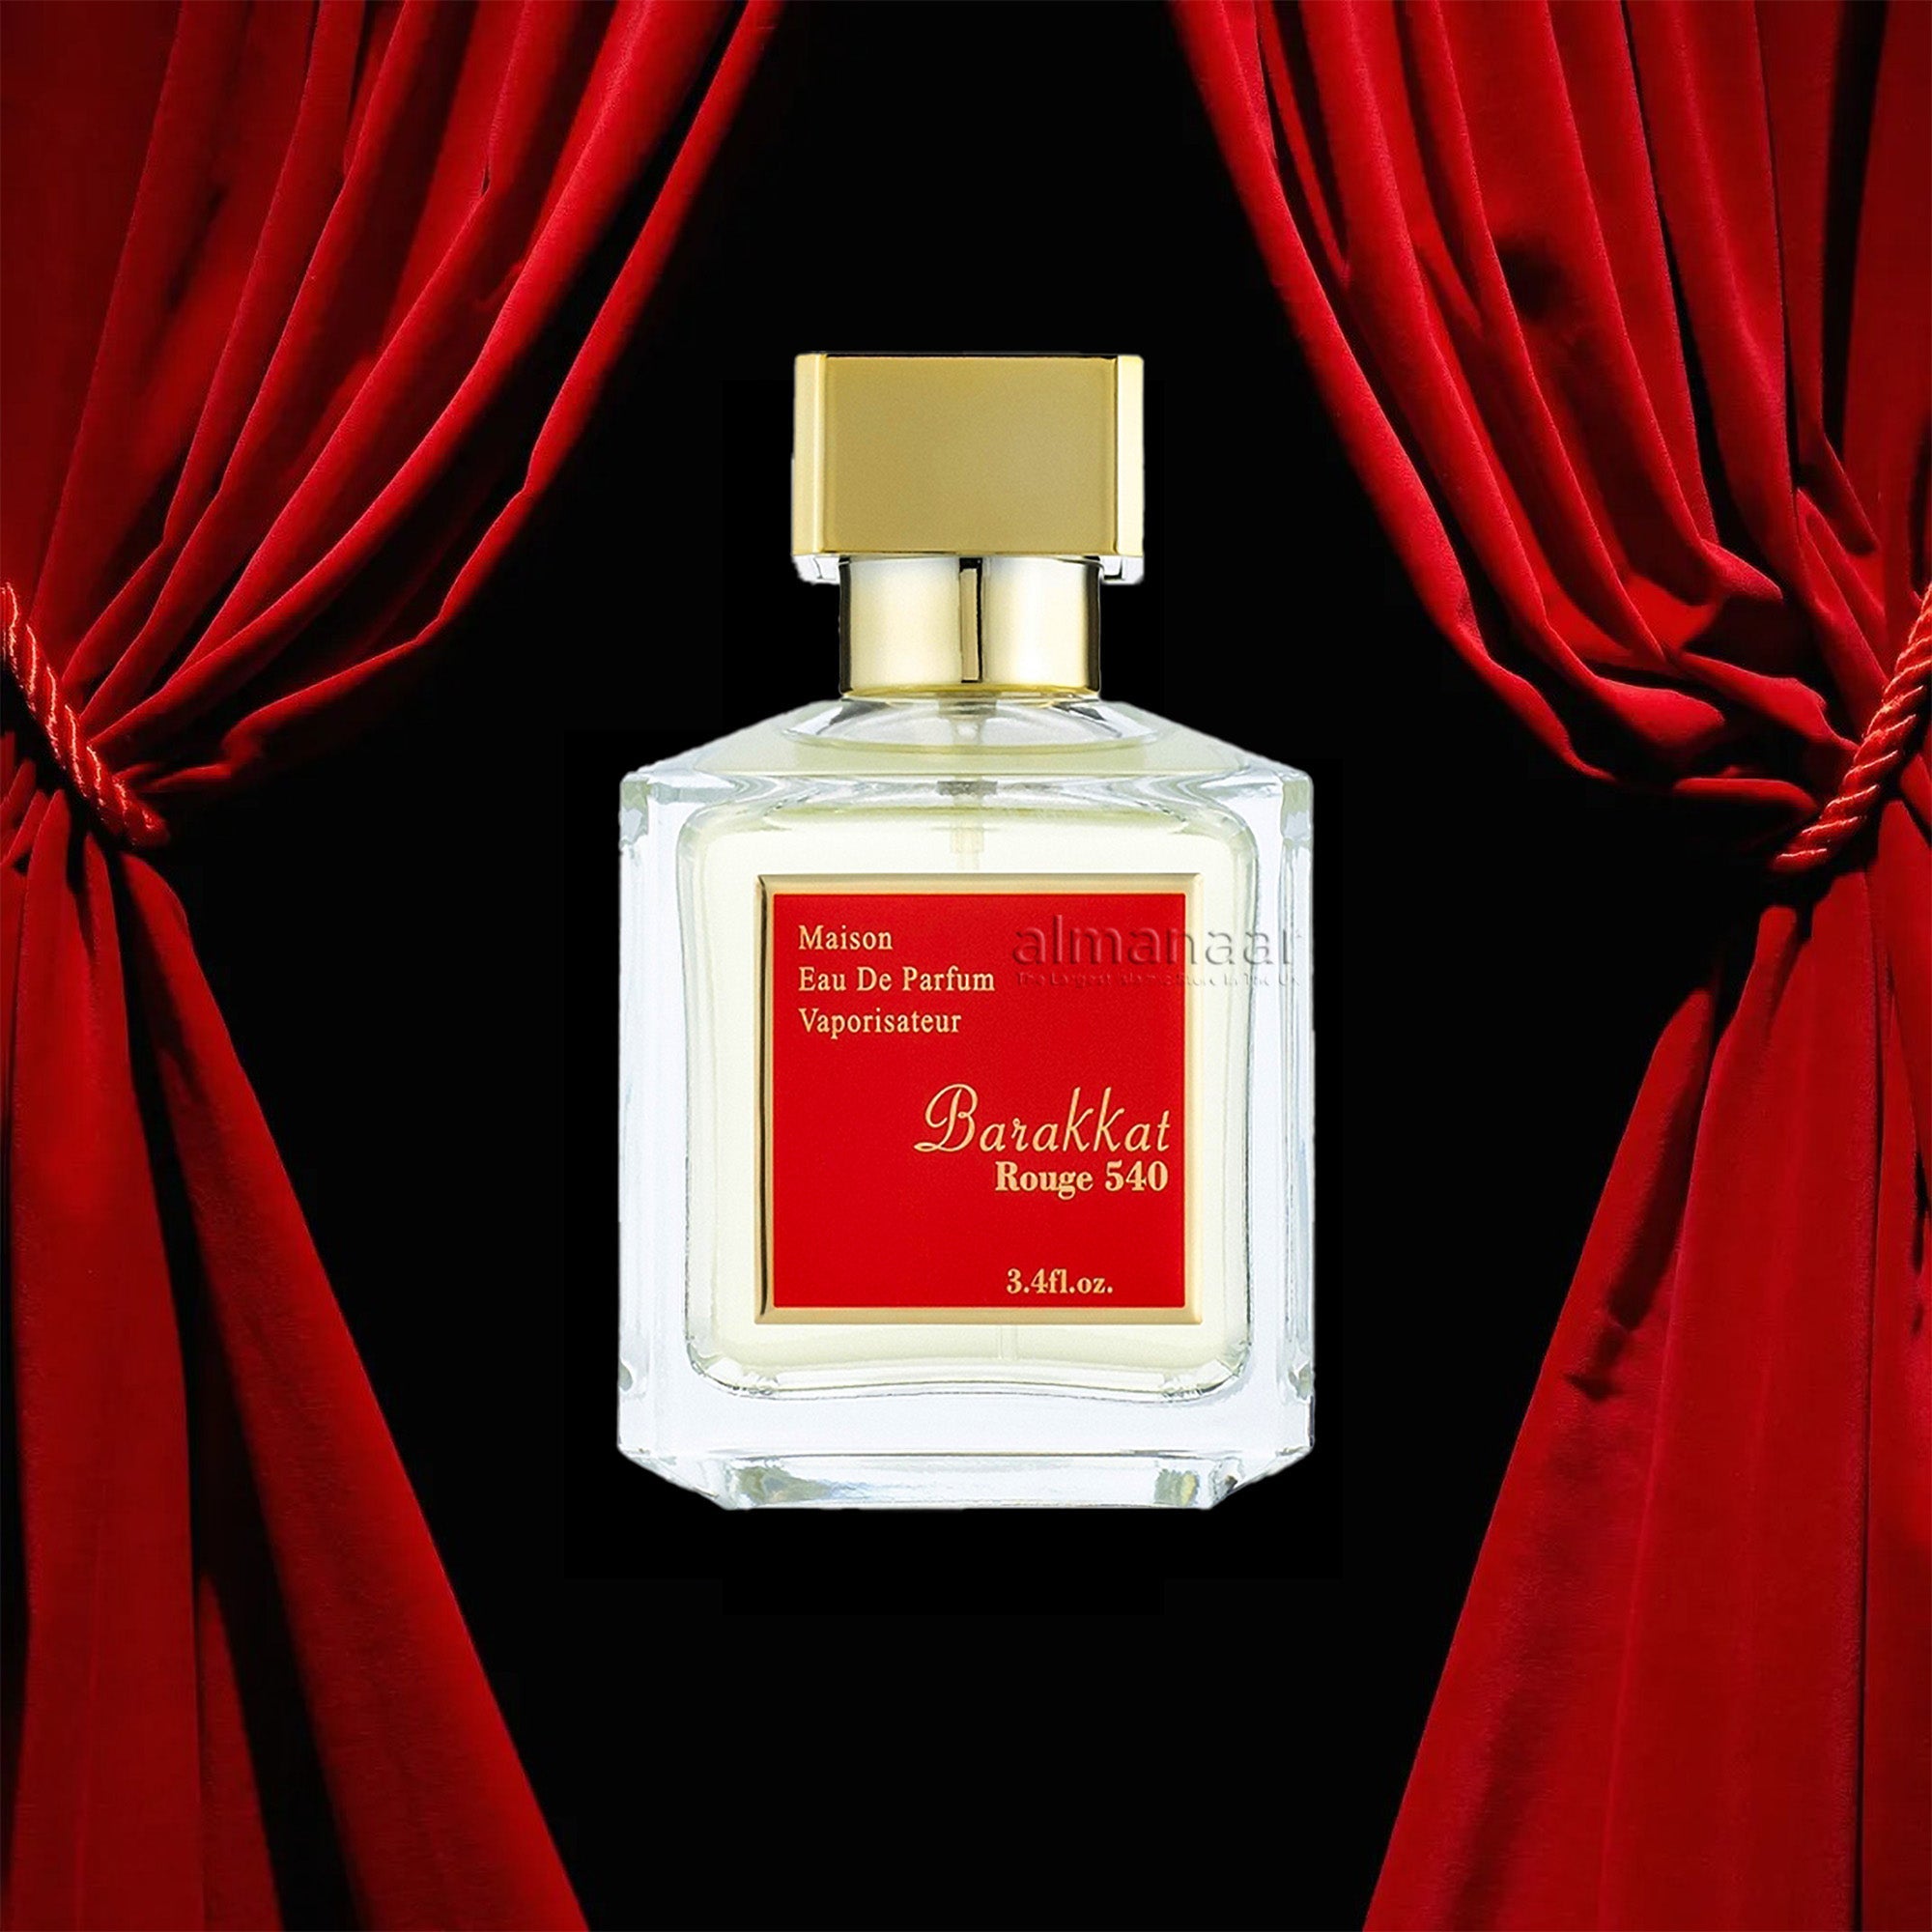 Baccarat rouge 504. Mason Eau de Parfum Baccarat rouge 504 60 мл. Barracat rouge 540. Baroque rouge 540. Barakkat rouge 540 Original.